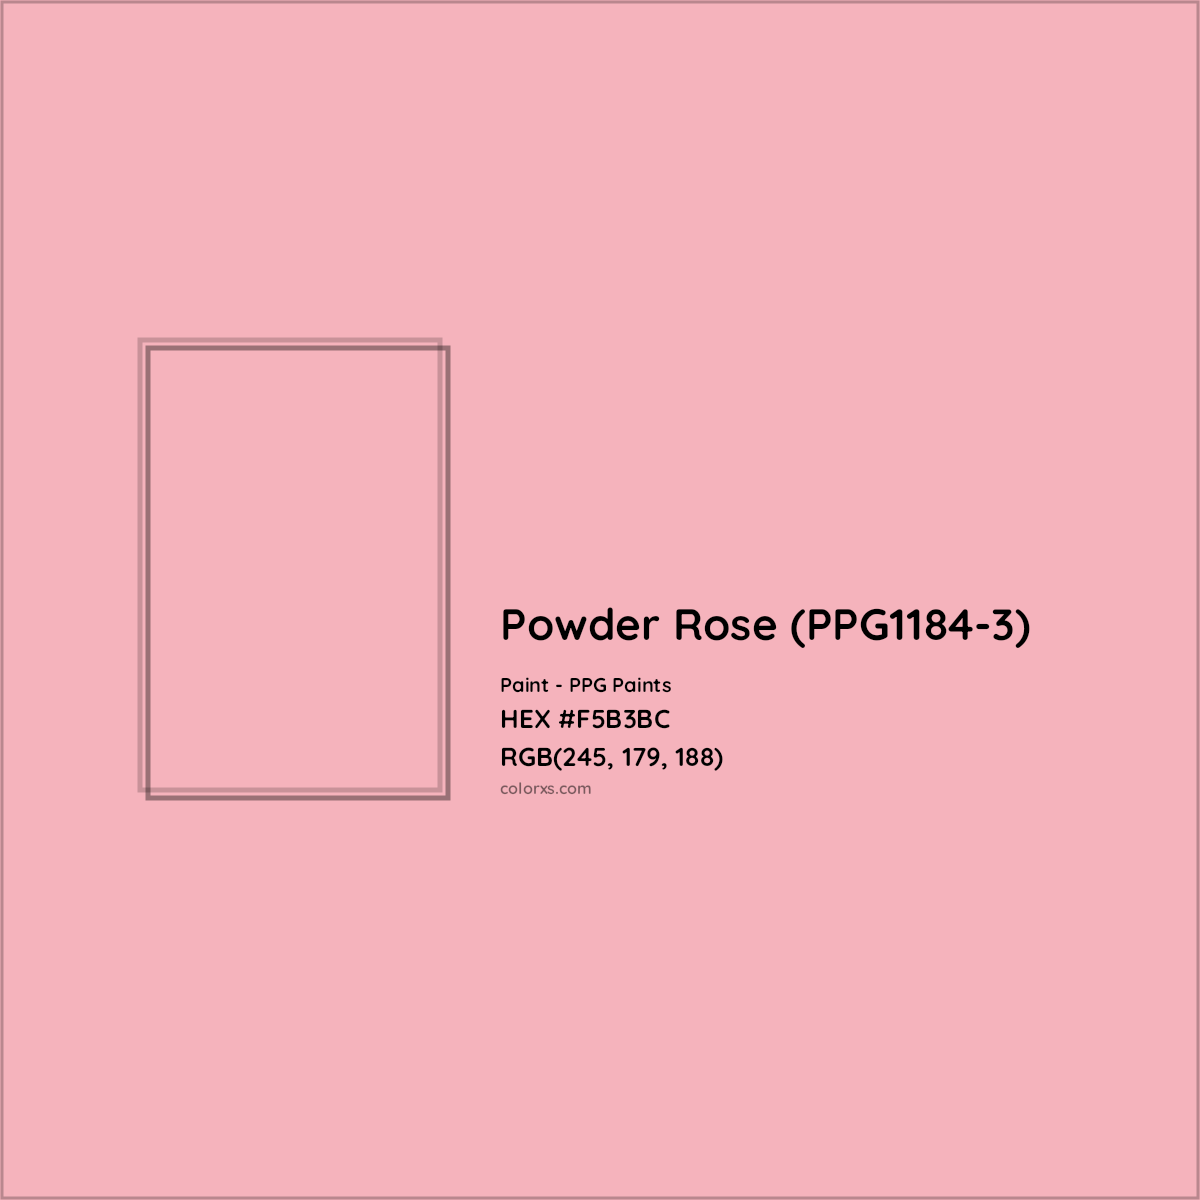 HEX #F5B3BC Powder Rose (PPG1184-3) Paint PPG Paints - Color Code